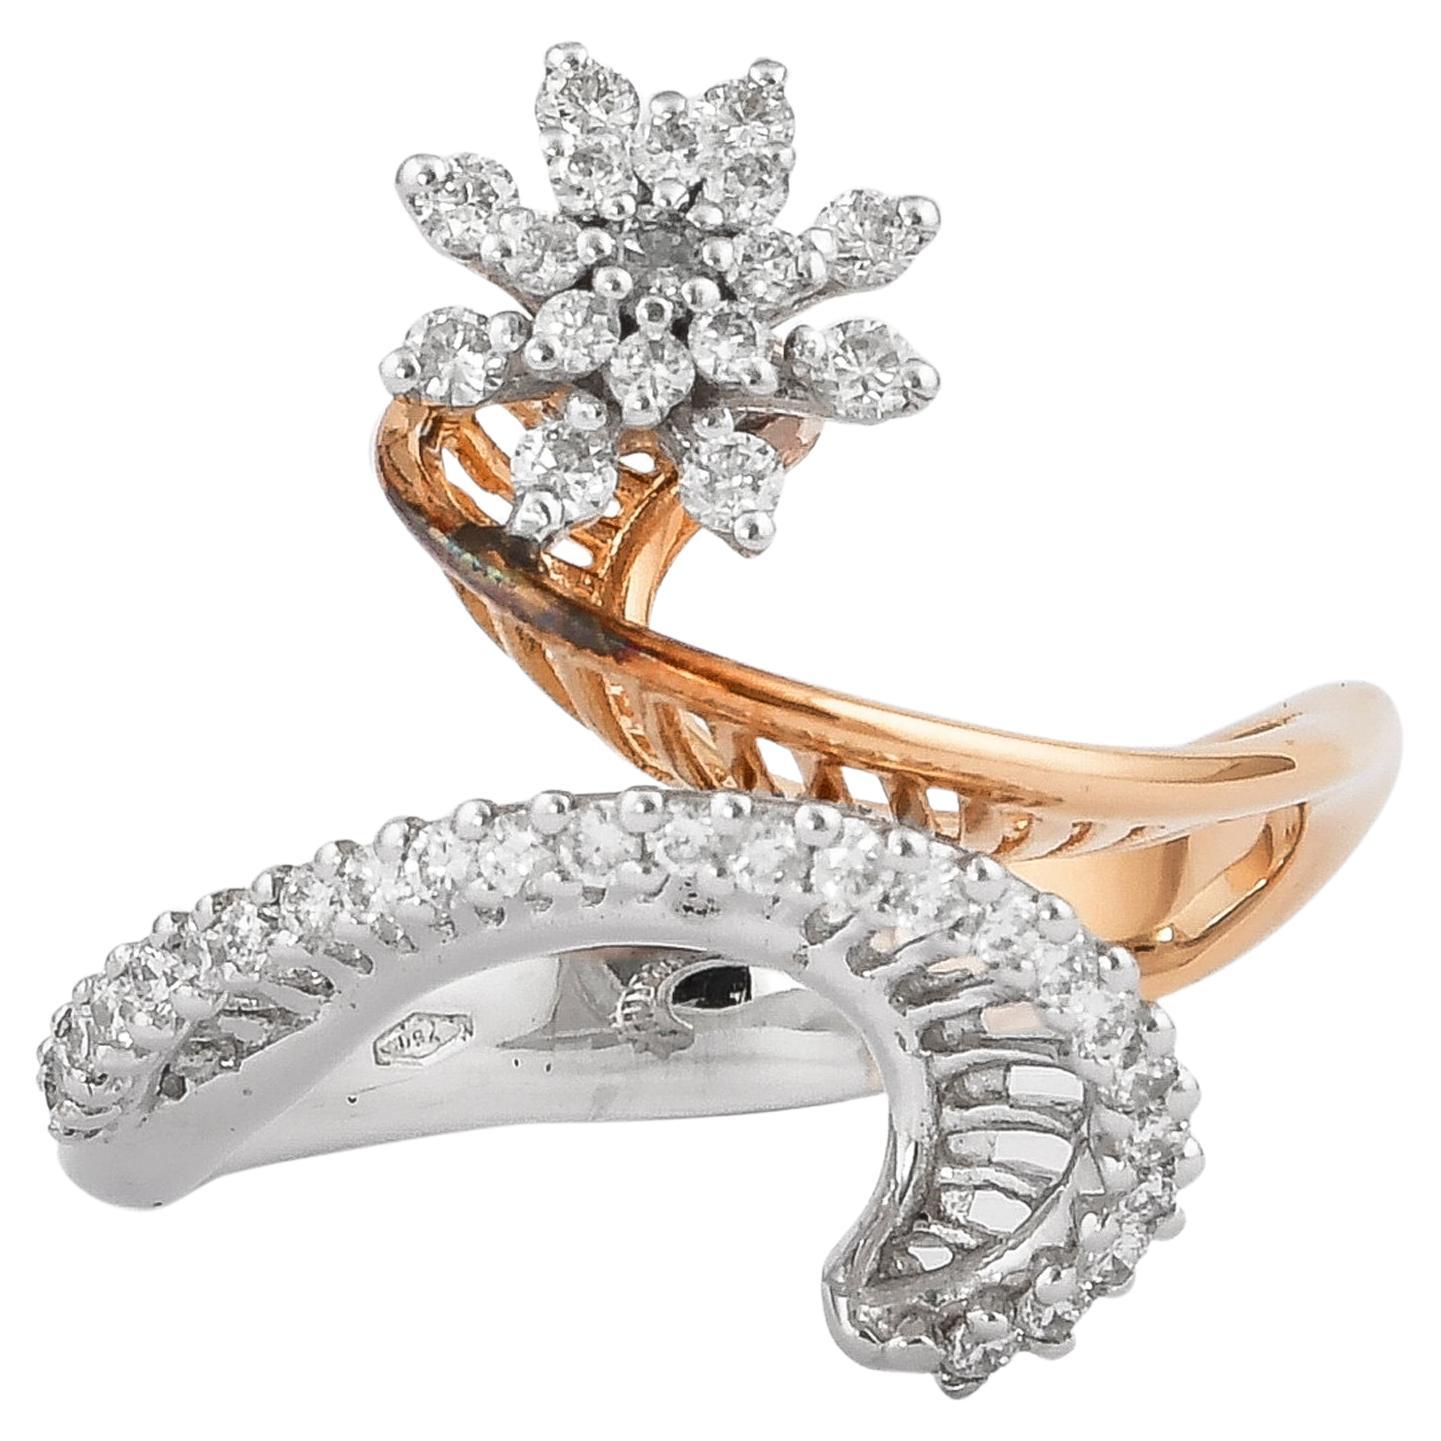 0.413 Carat Diamond Ring in 18 Karat White & Rose Gold. For Sale